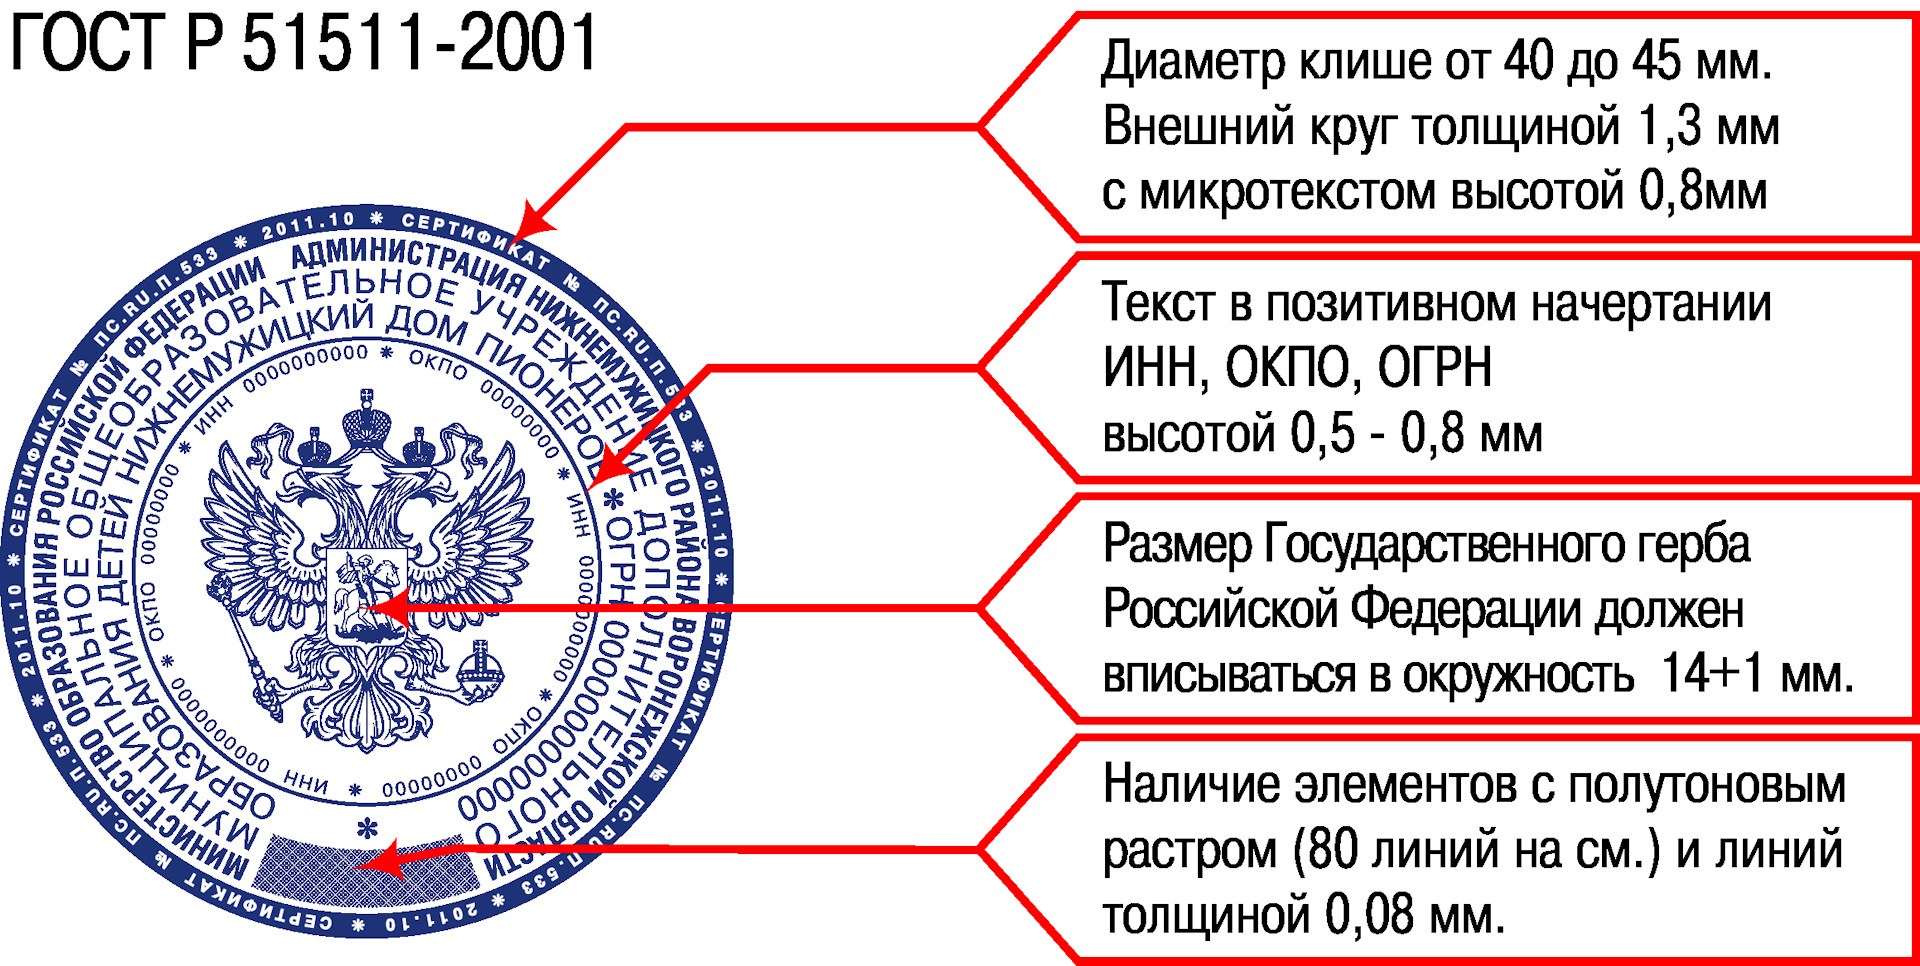 Стандарт гербовой печати Российской Федерации